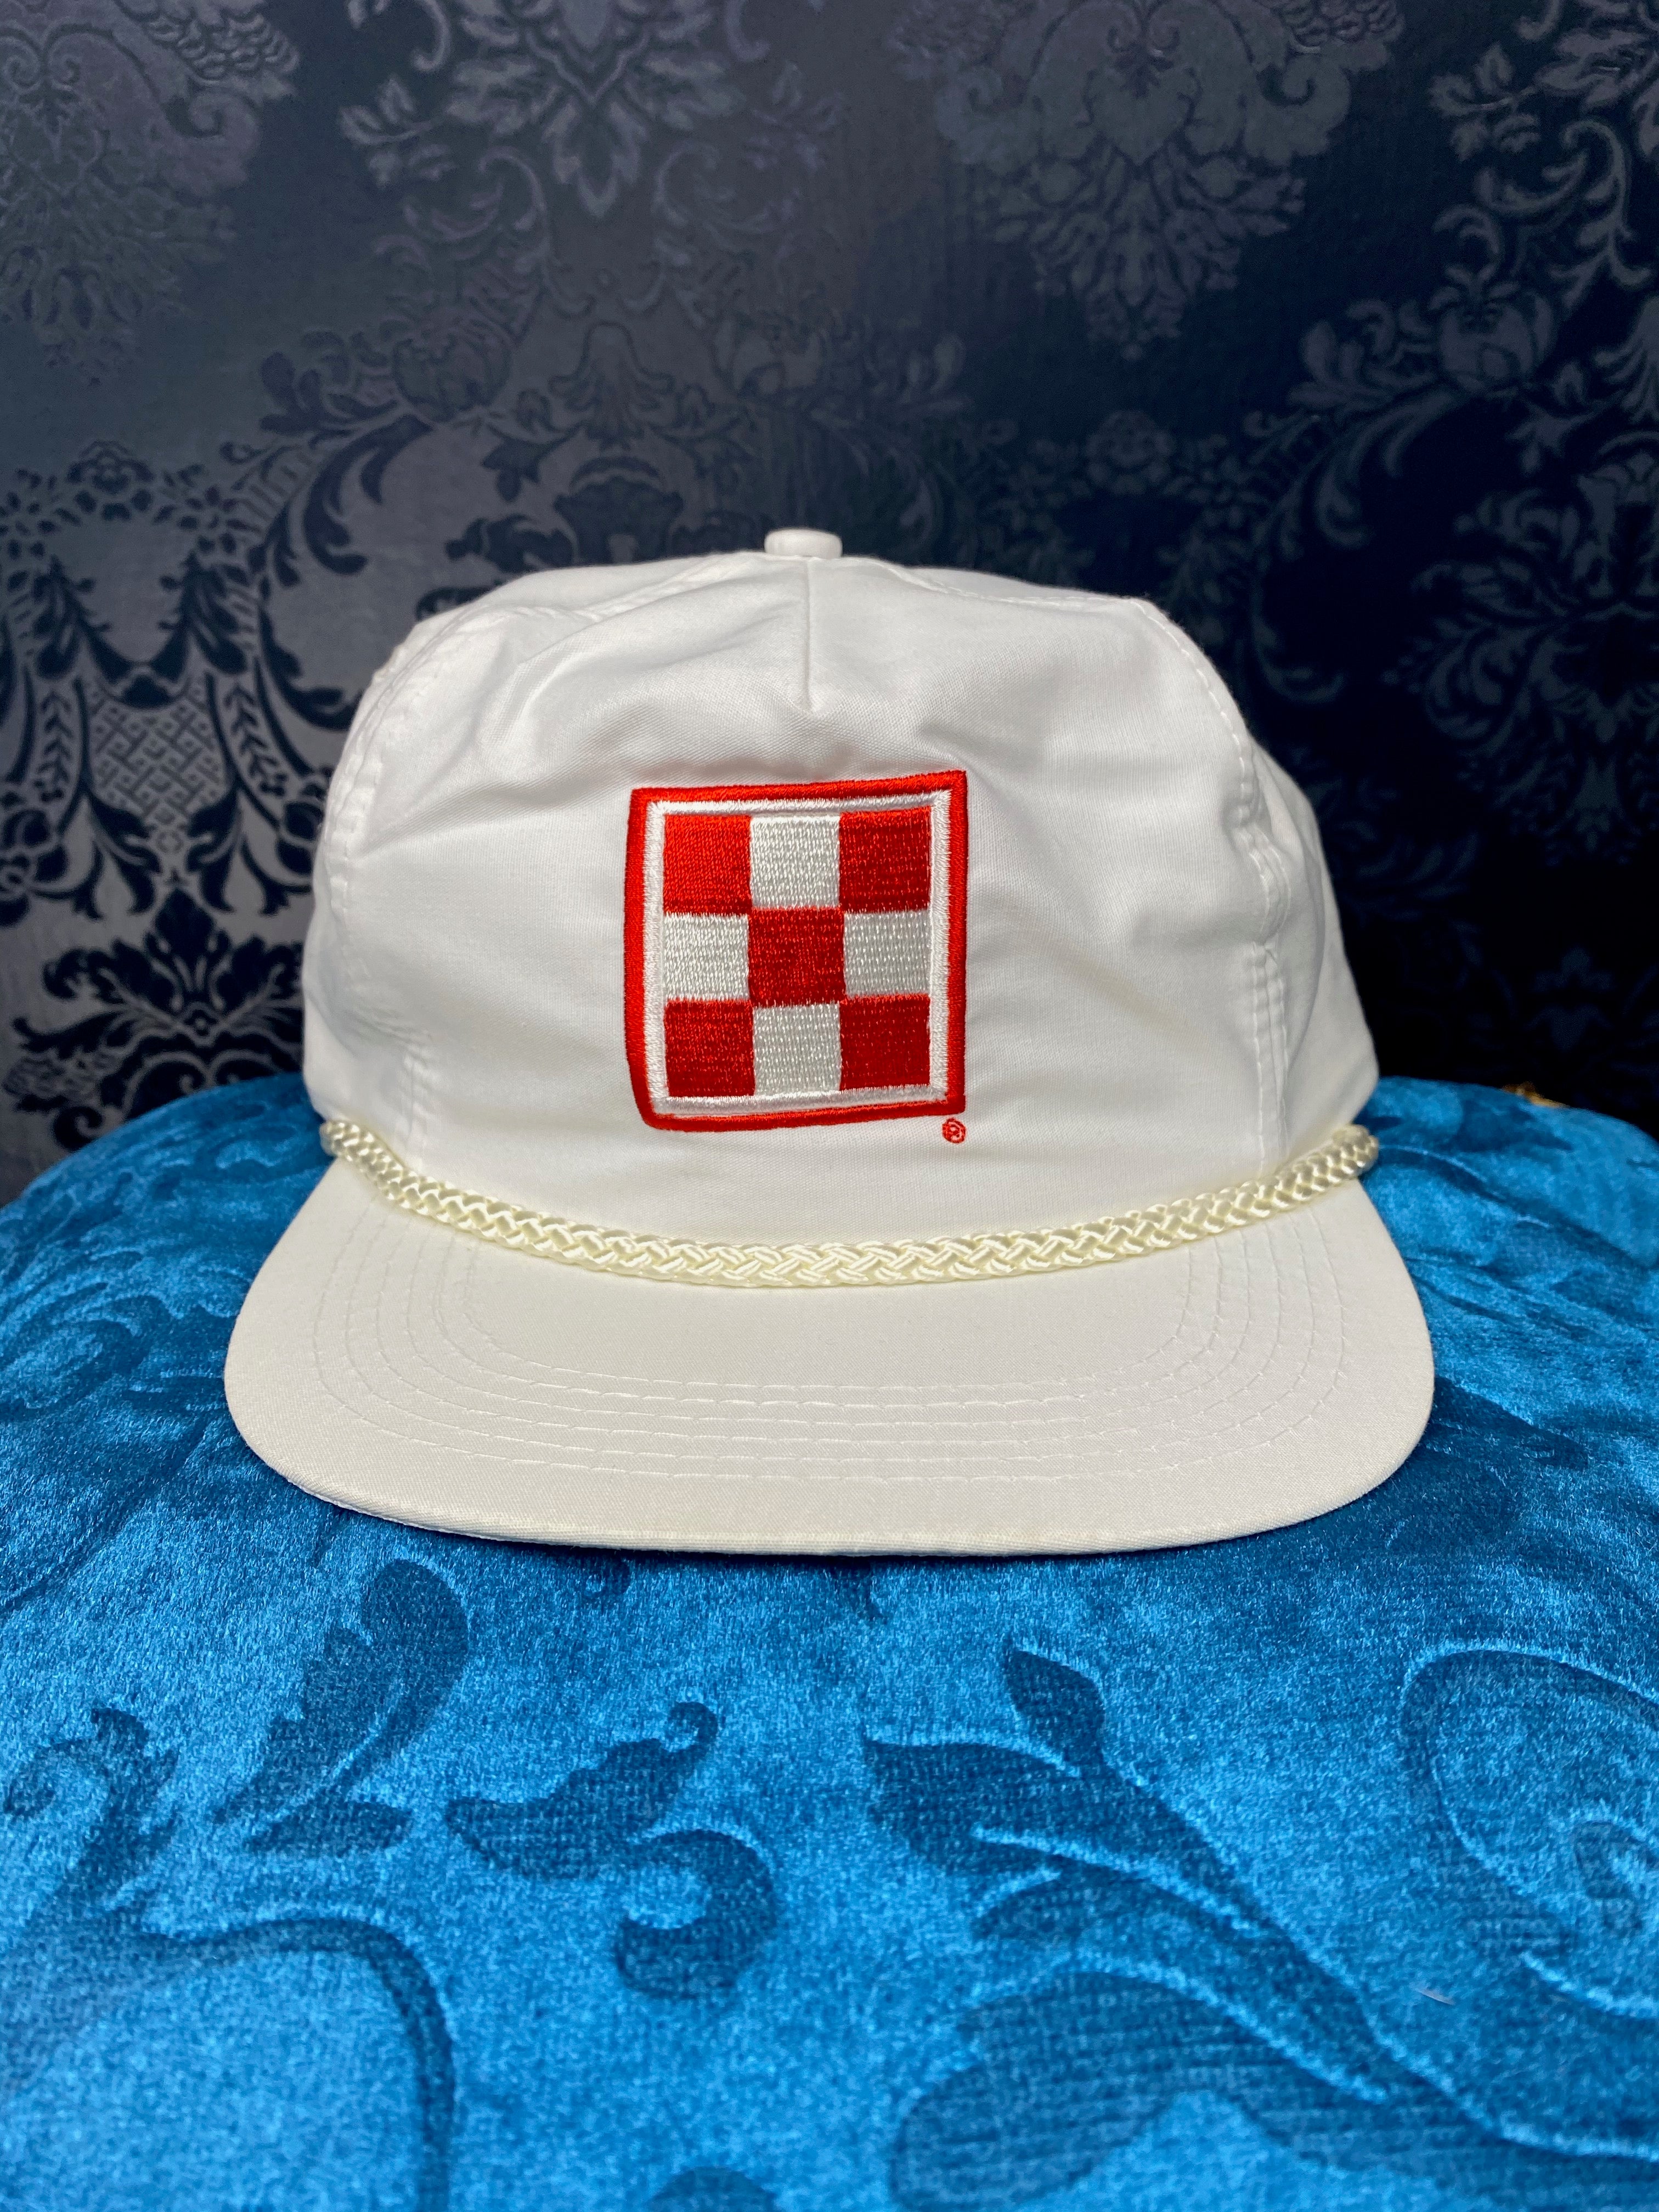 Vintage 90s "Purina" Logo snap back hat